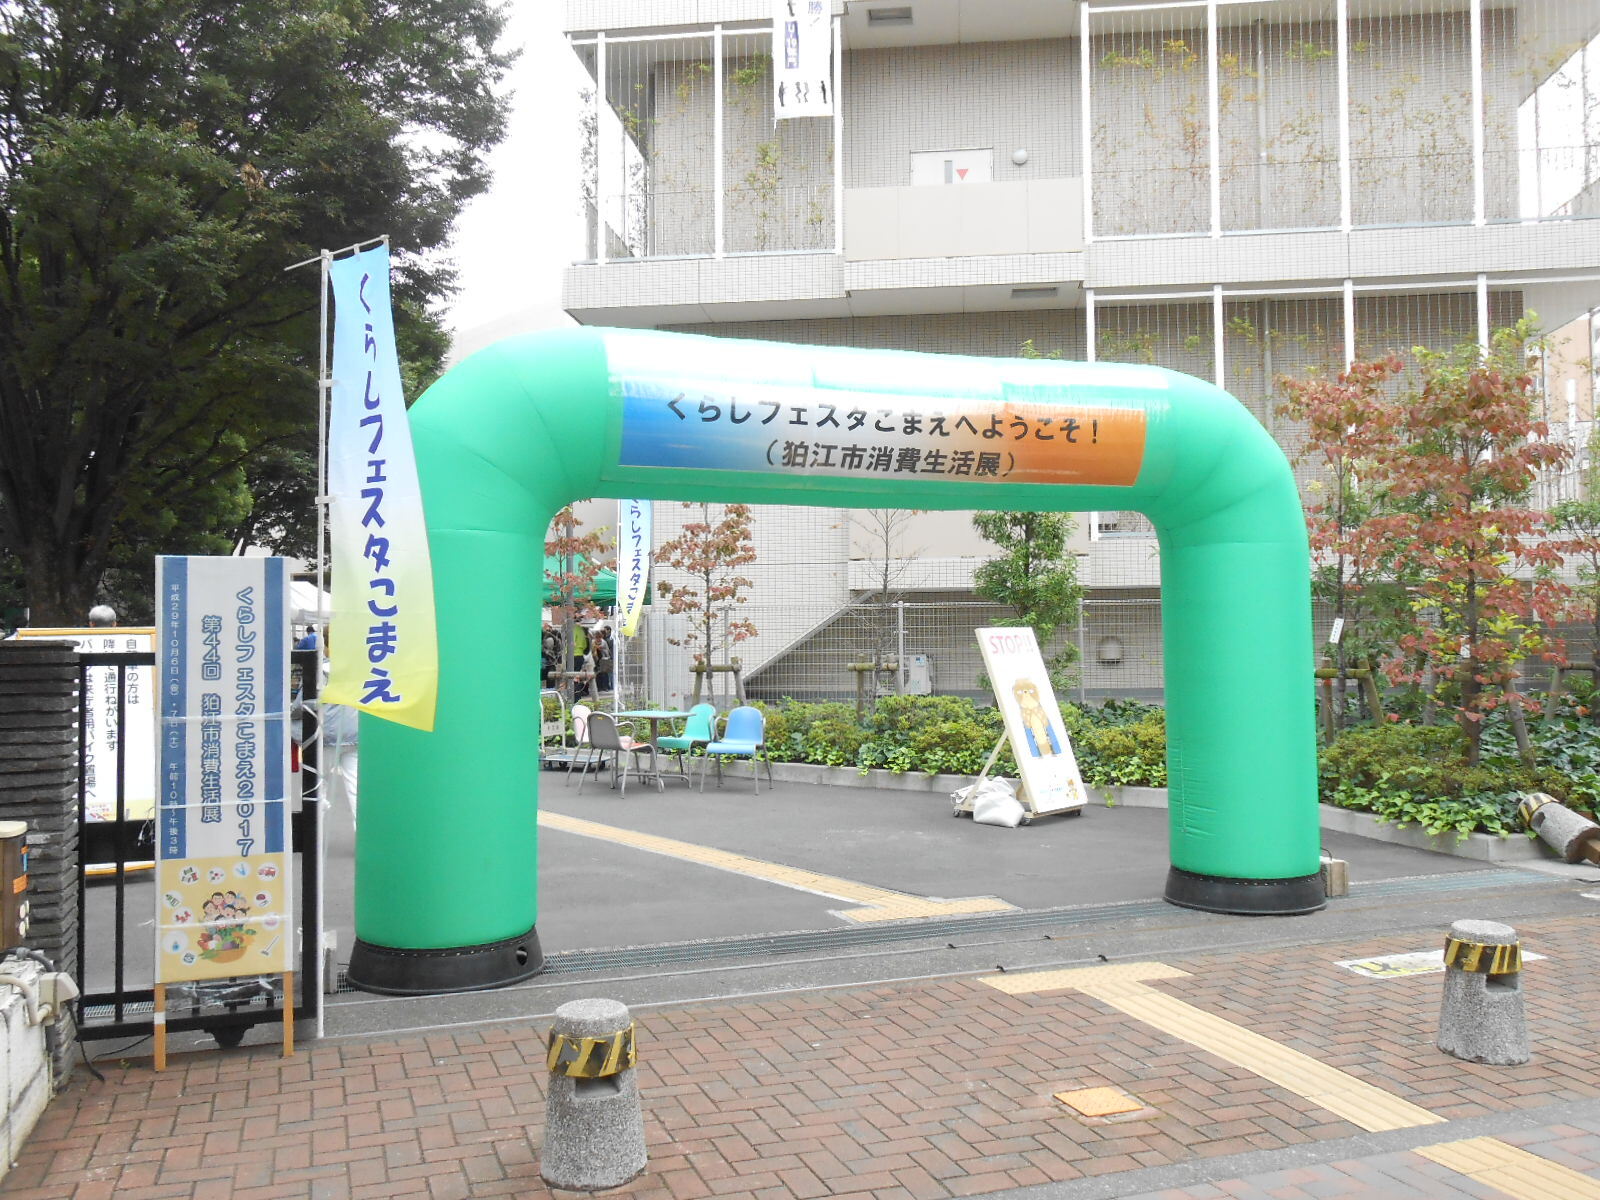 狛江市消費生活展の入口の写真